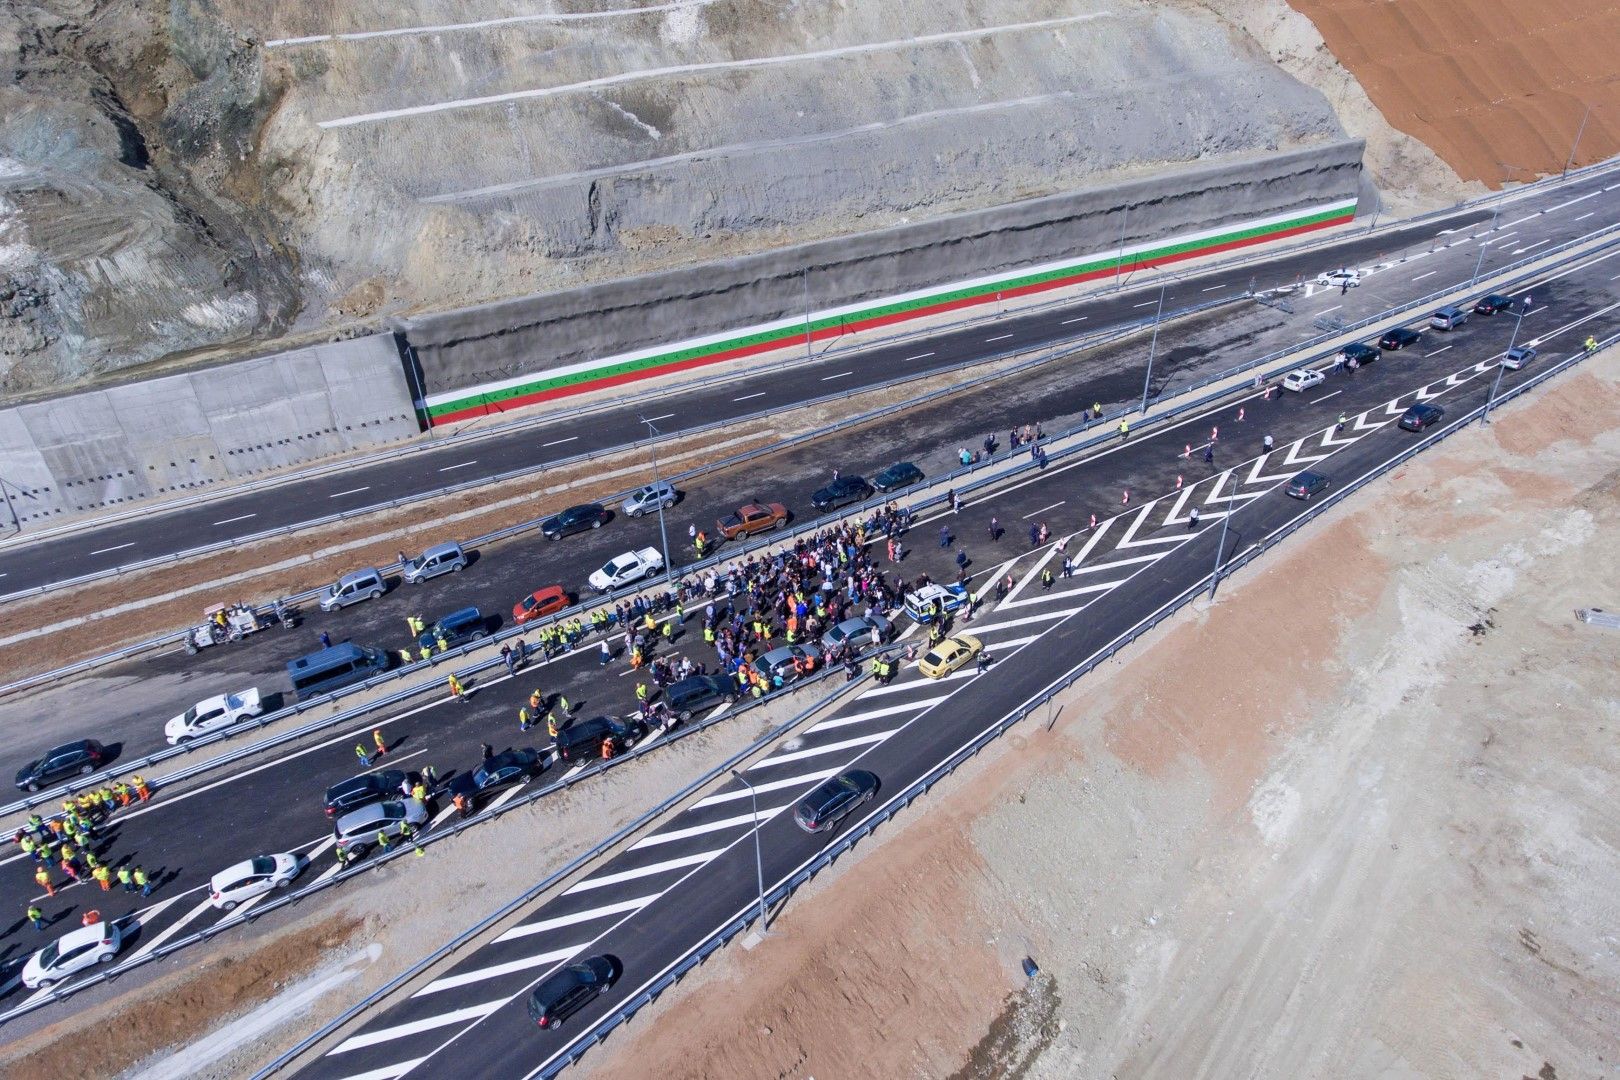 Откриване на нова отсечка на магистрала Струма, 23 май 2019